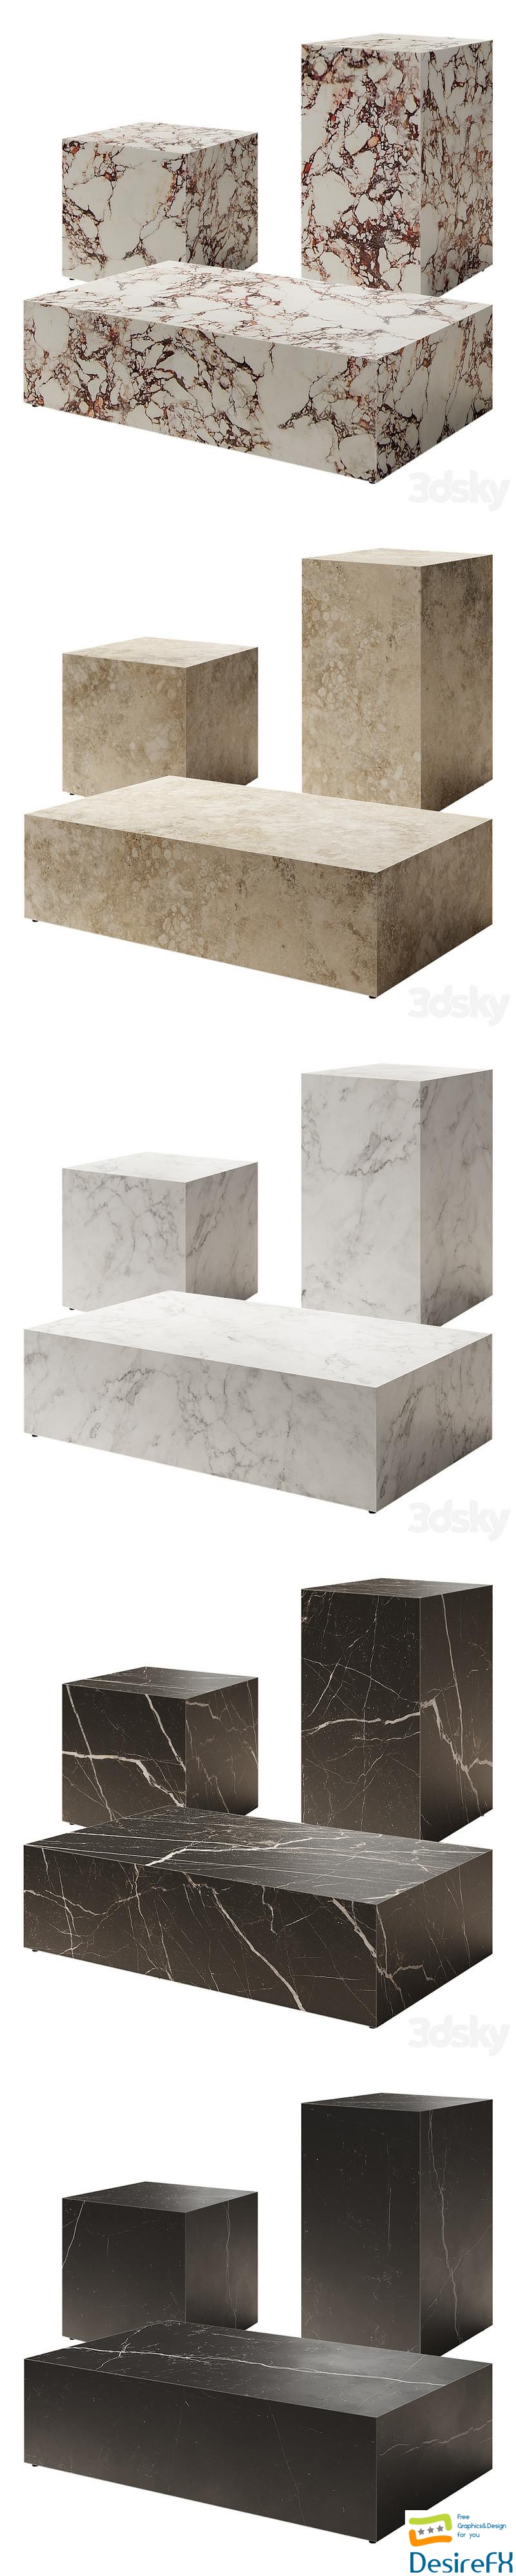 AUDO Plinth Marble Table by Norm (Menu) 3D Model